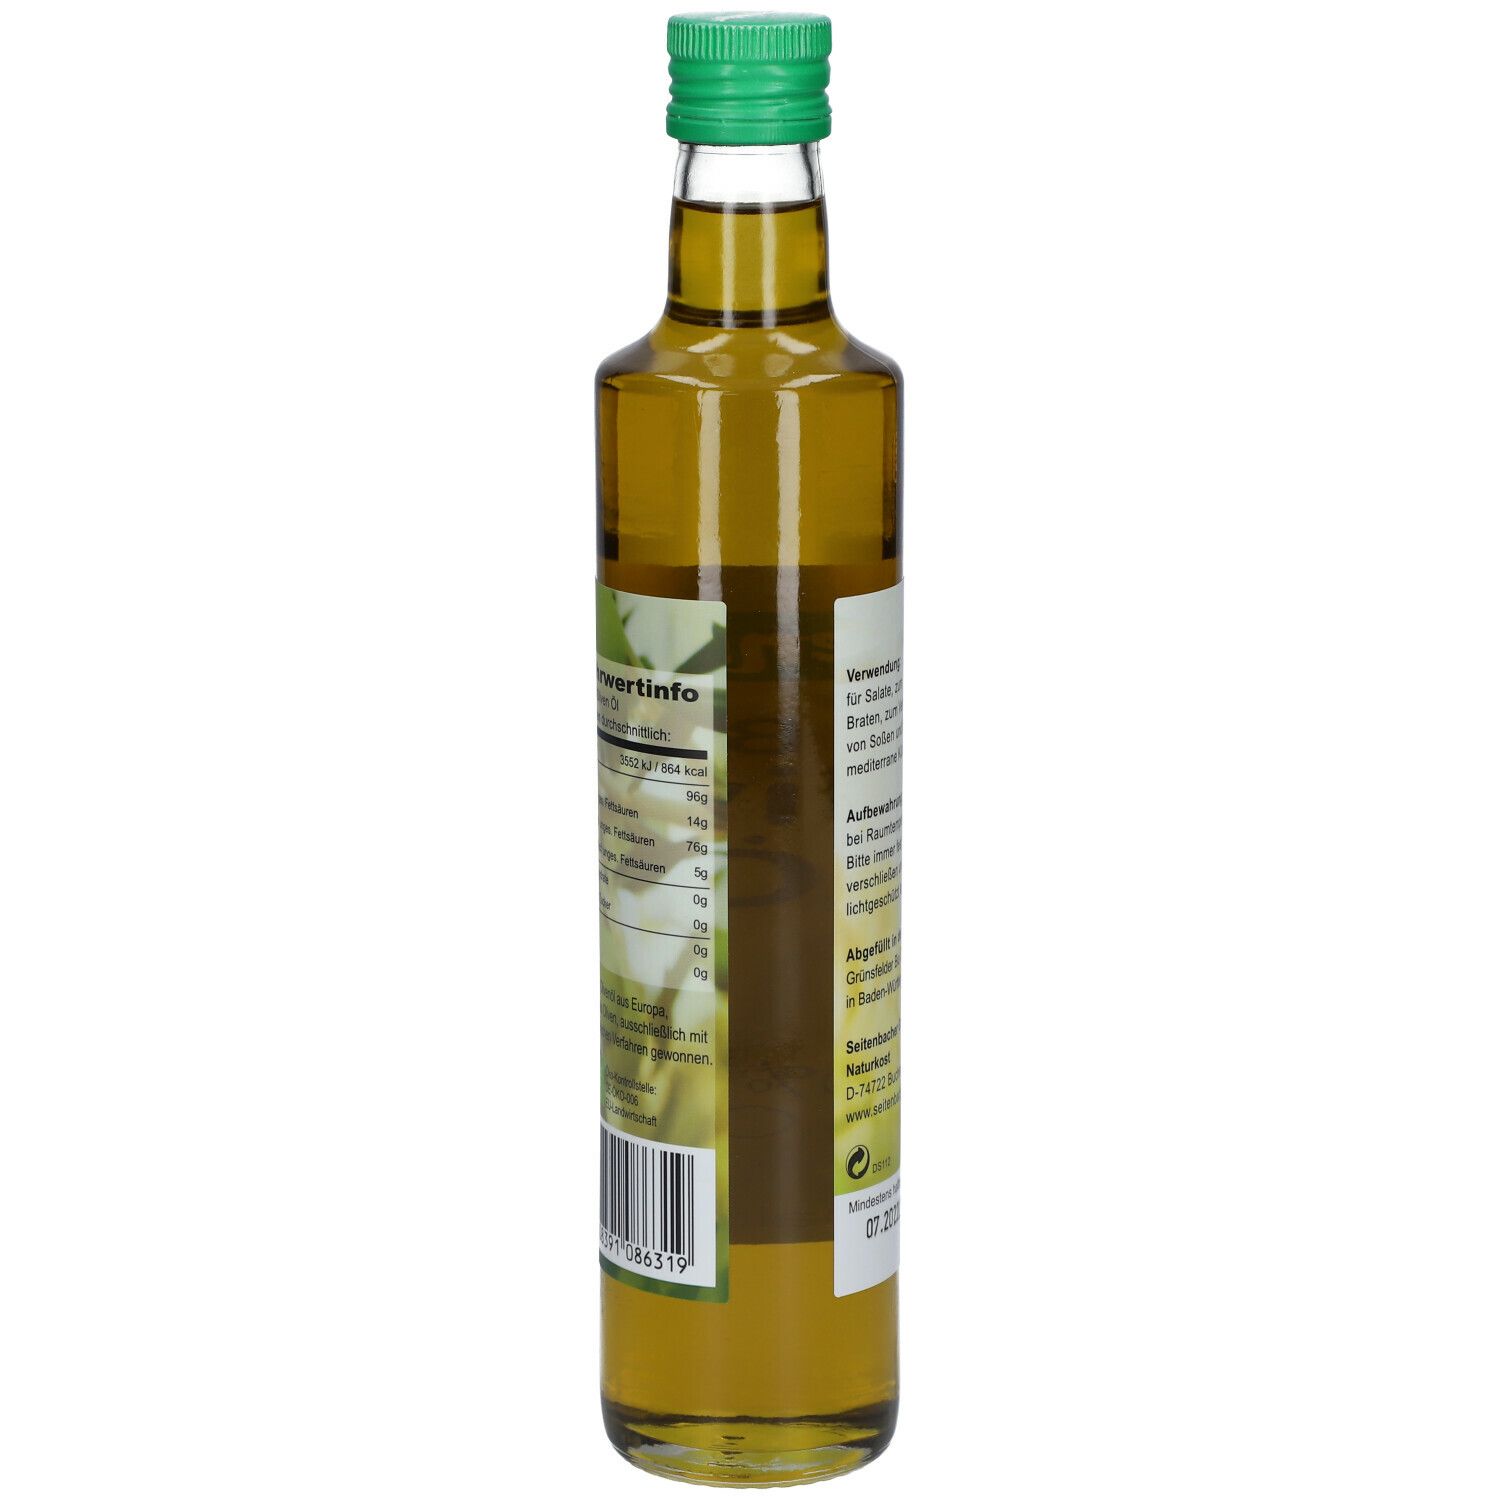 Seitenbacher® Bio Olivenöl